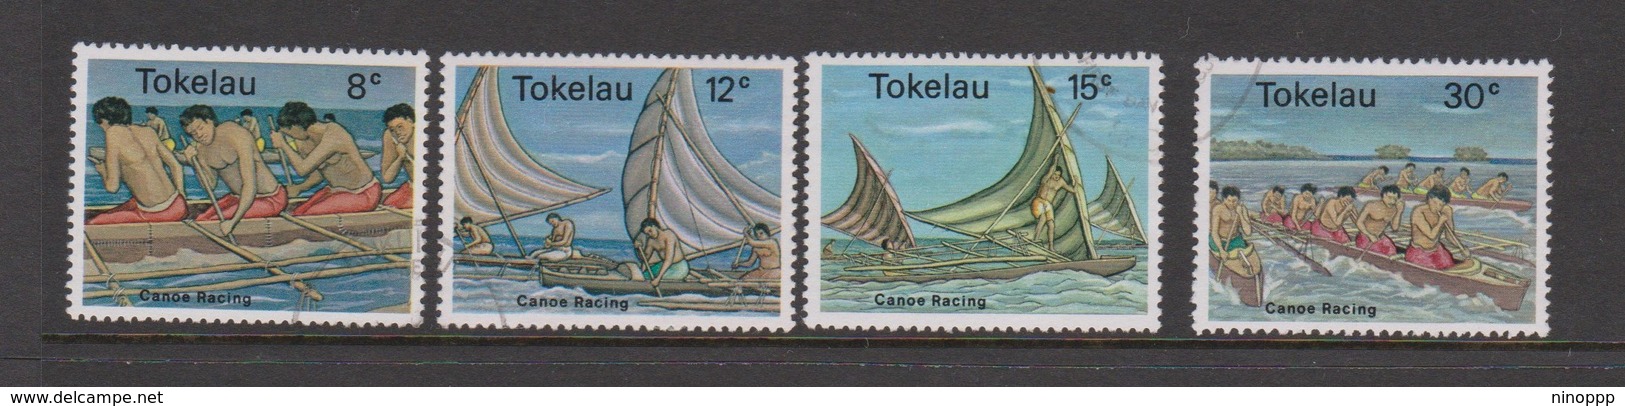 Tokelau SG 65-68 1978 Canoe Racing,used - Tokelau